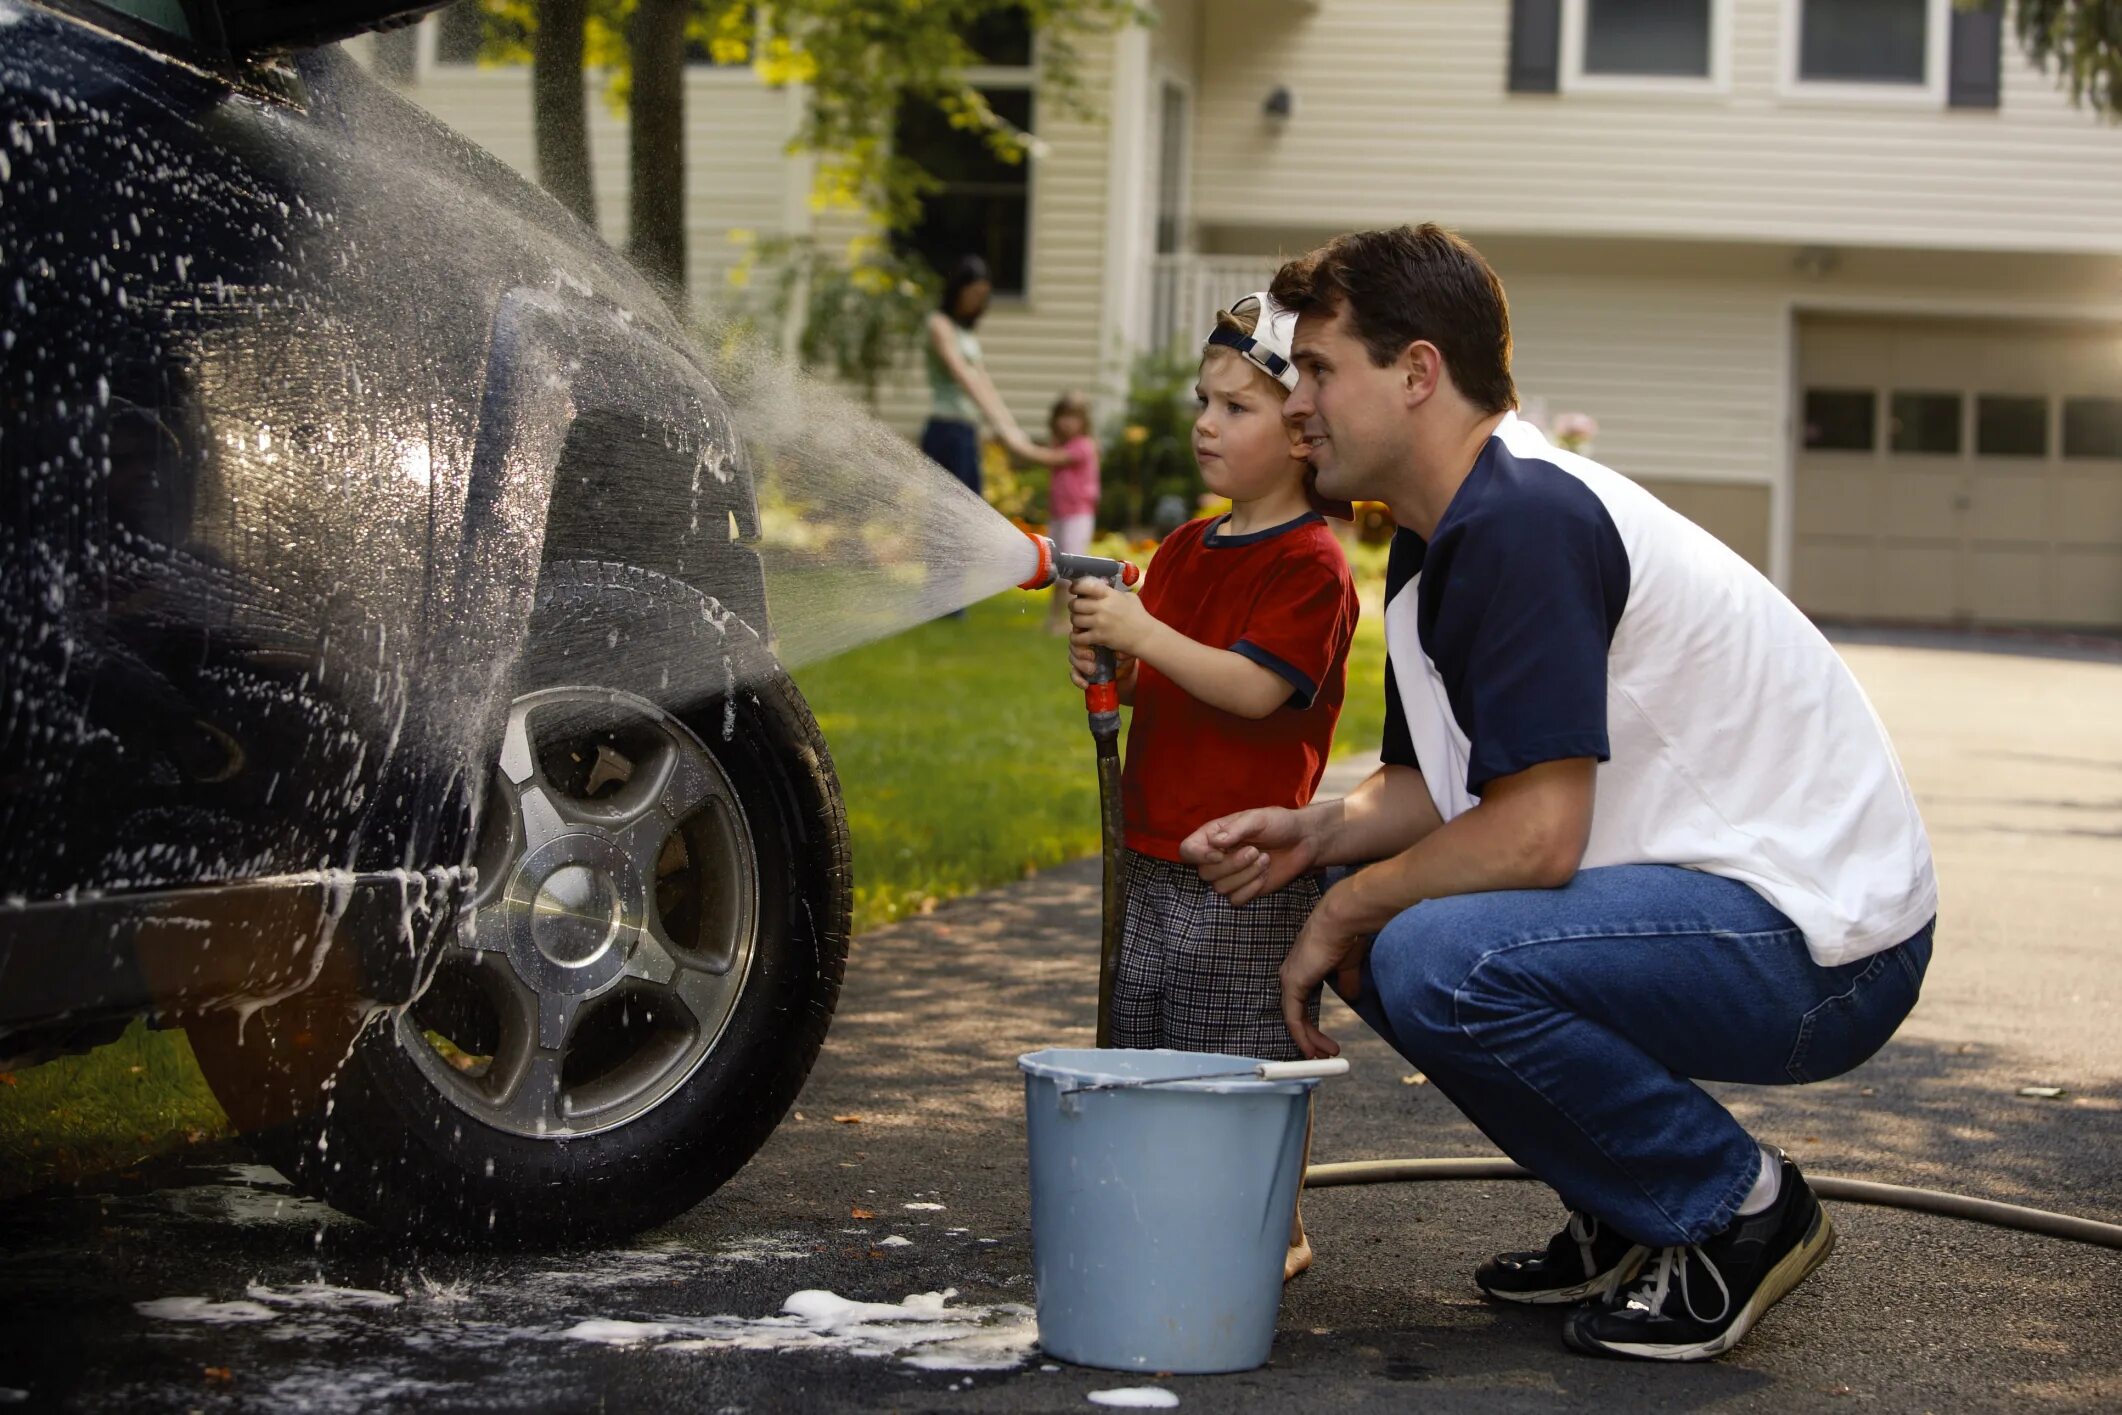 Моет машину. Ребенок чинит машину. Дети моют машину. Мальчик моет машину с папой. Моет папу видео